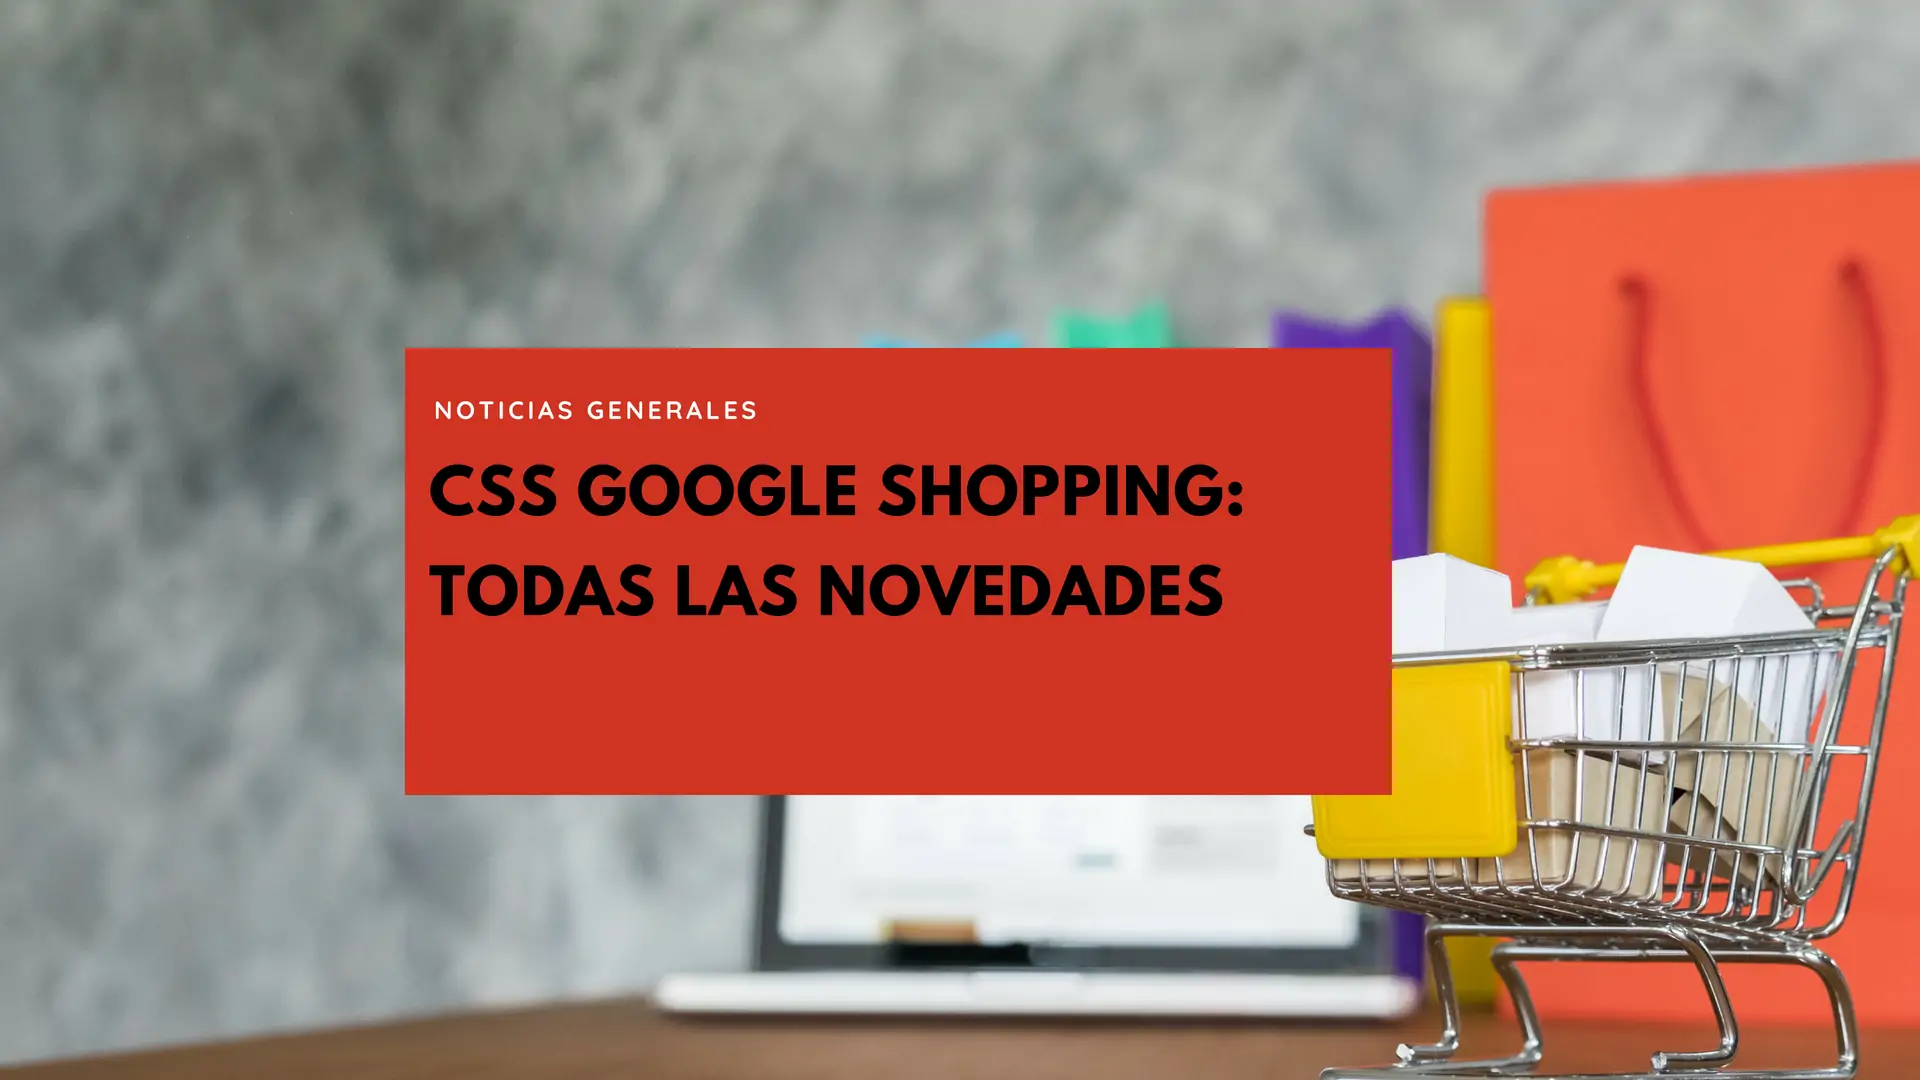 CSS Google Shopping: Todas las novedades